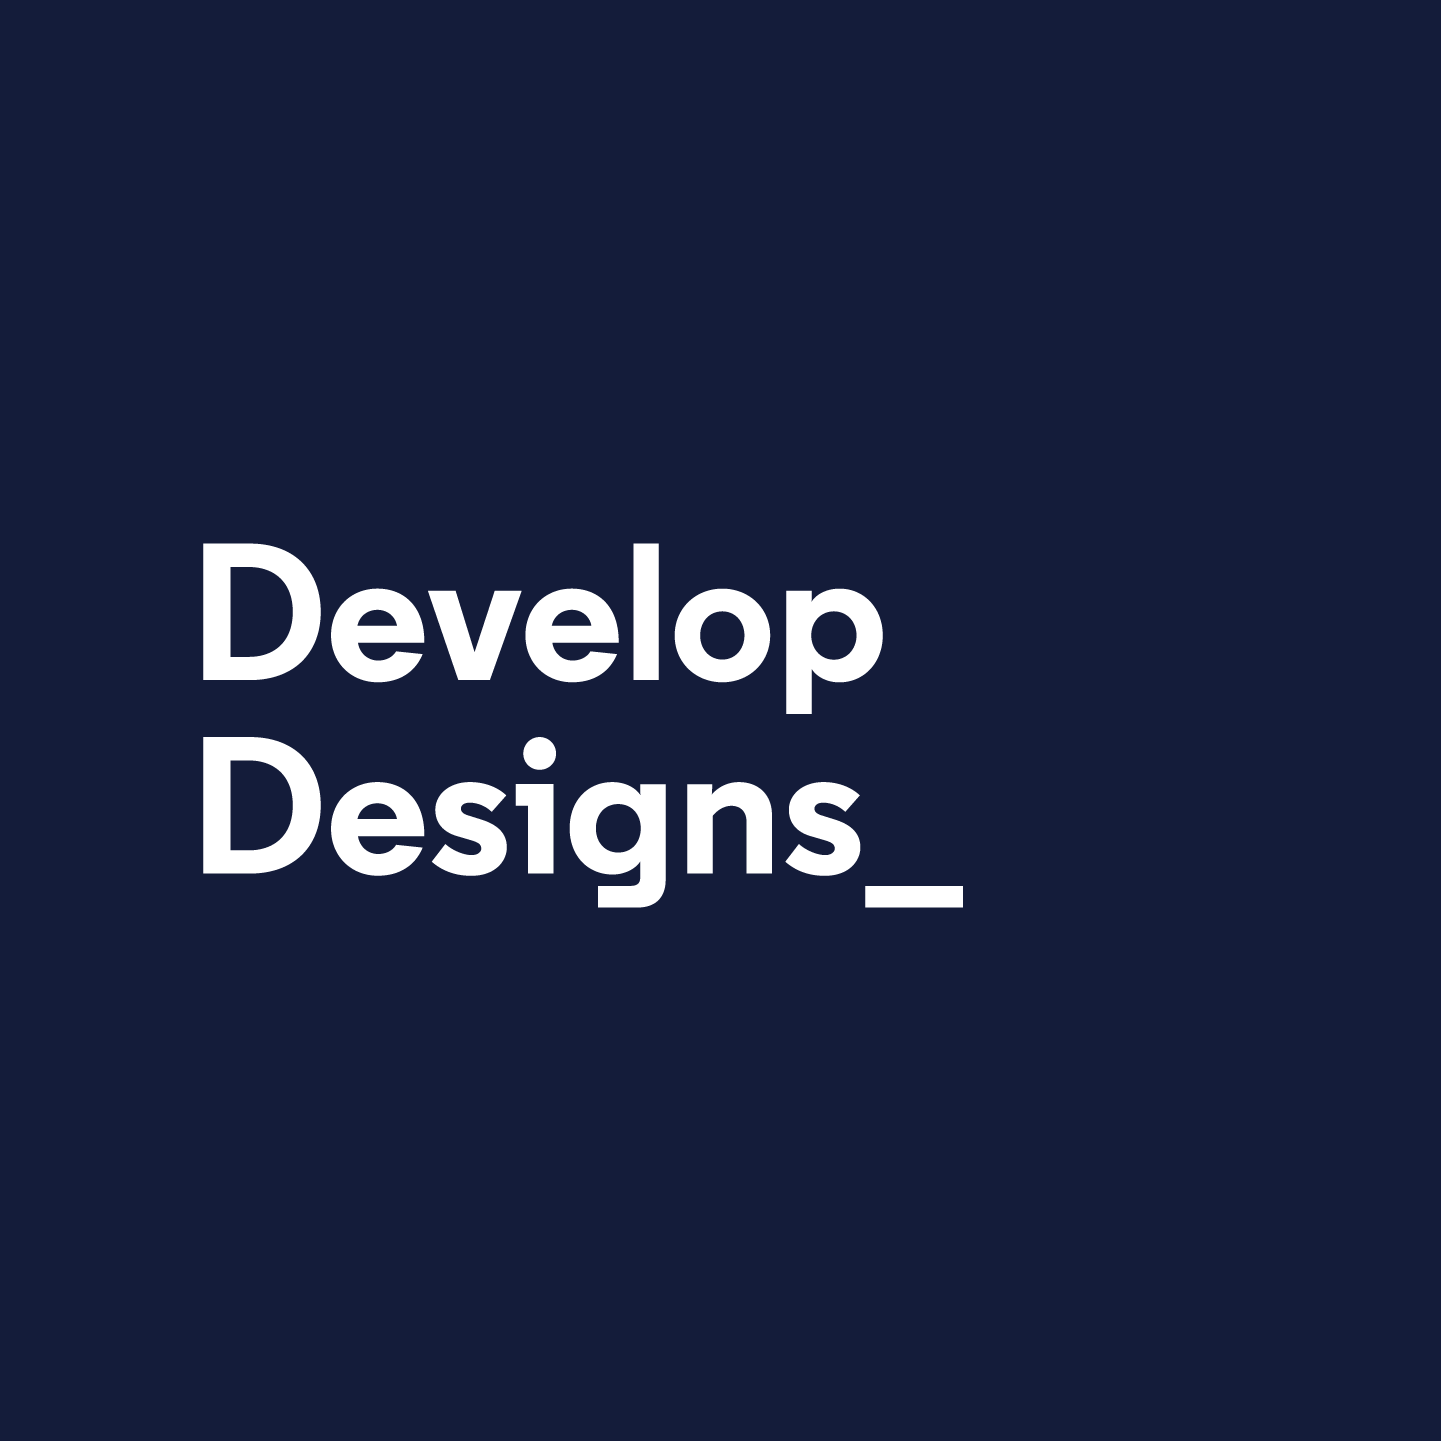 gander-codecademy-develop-designs@2x